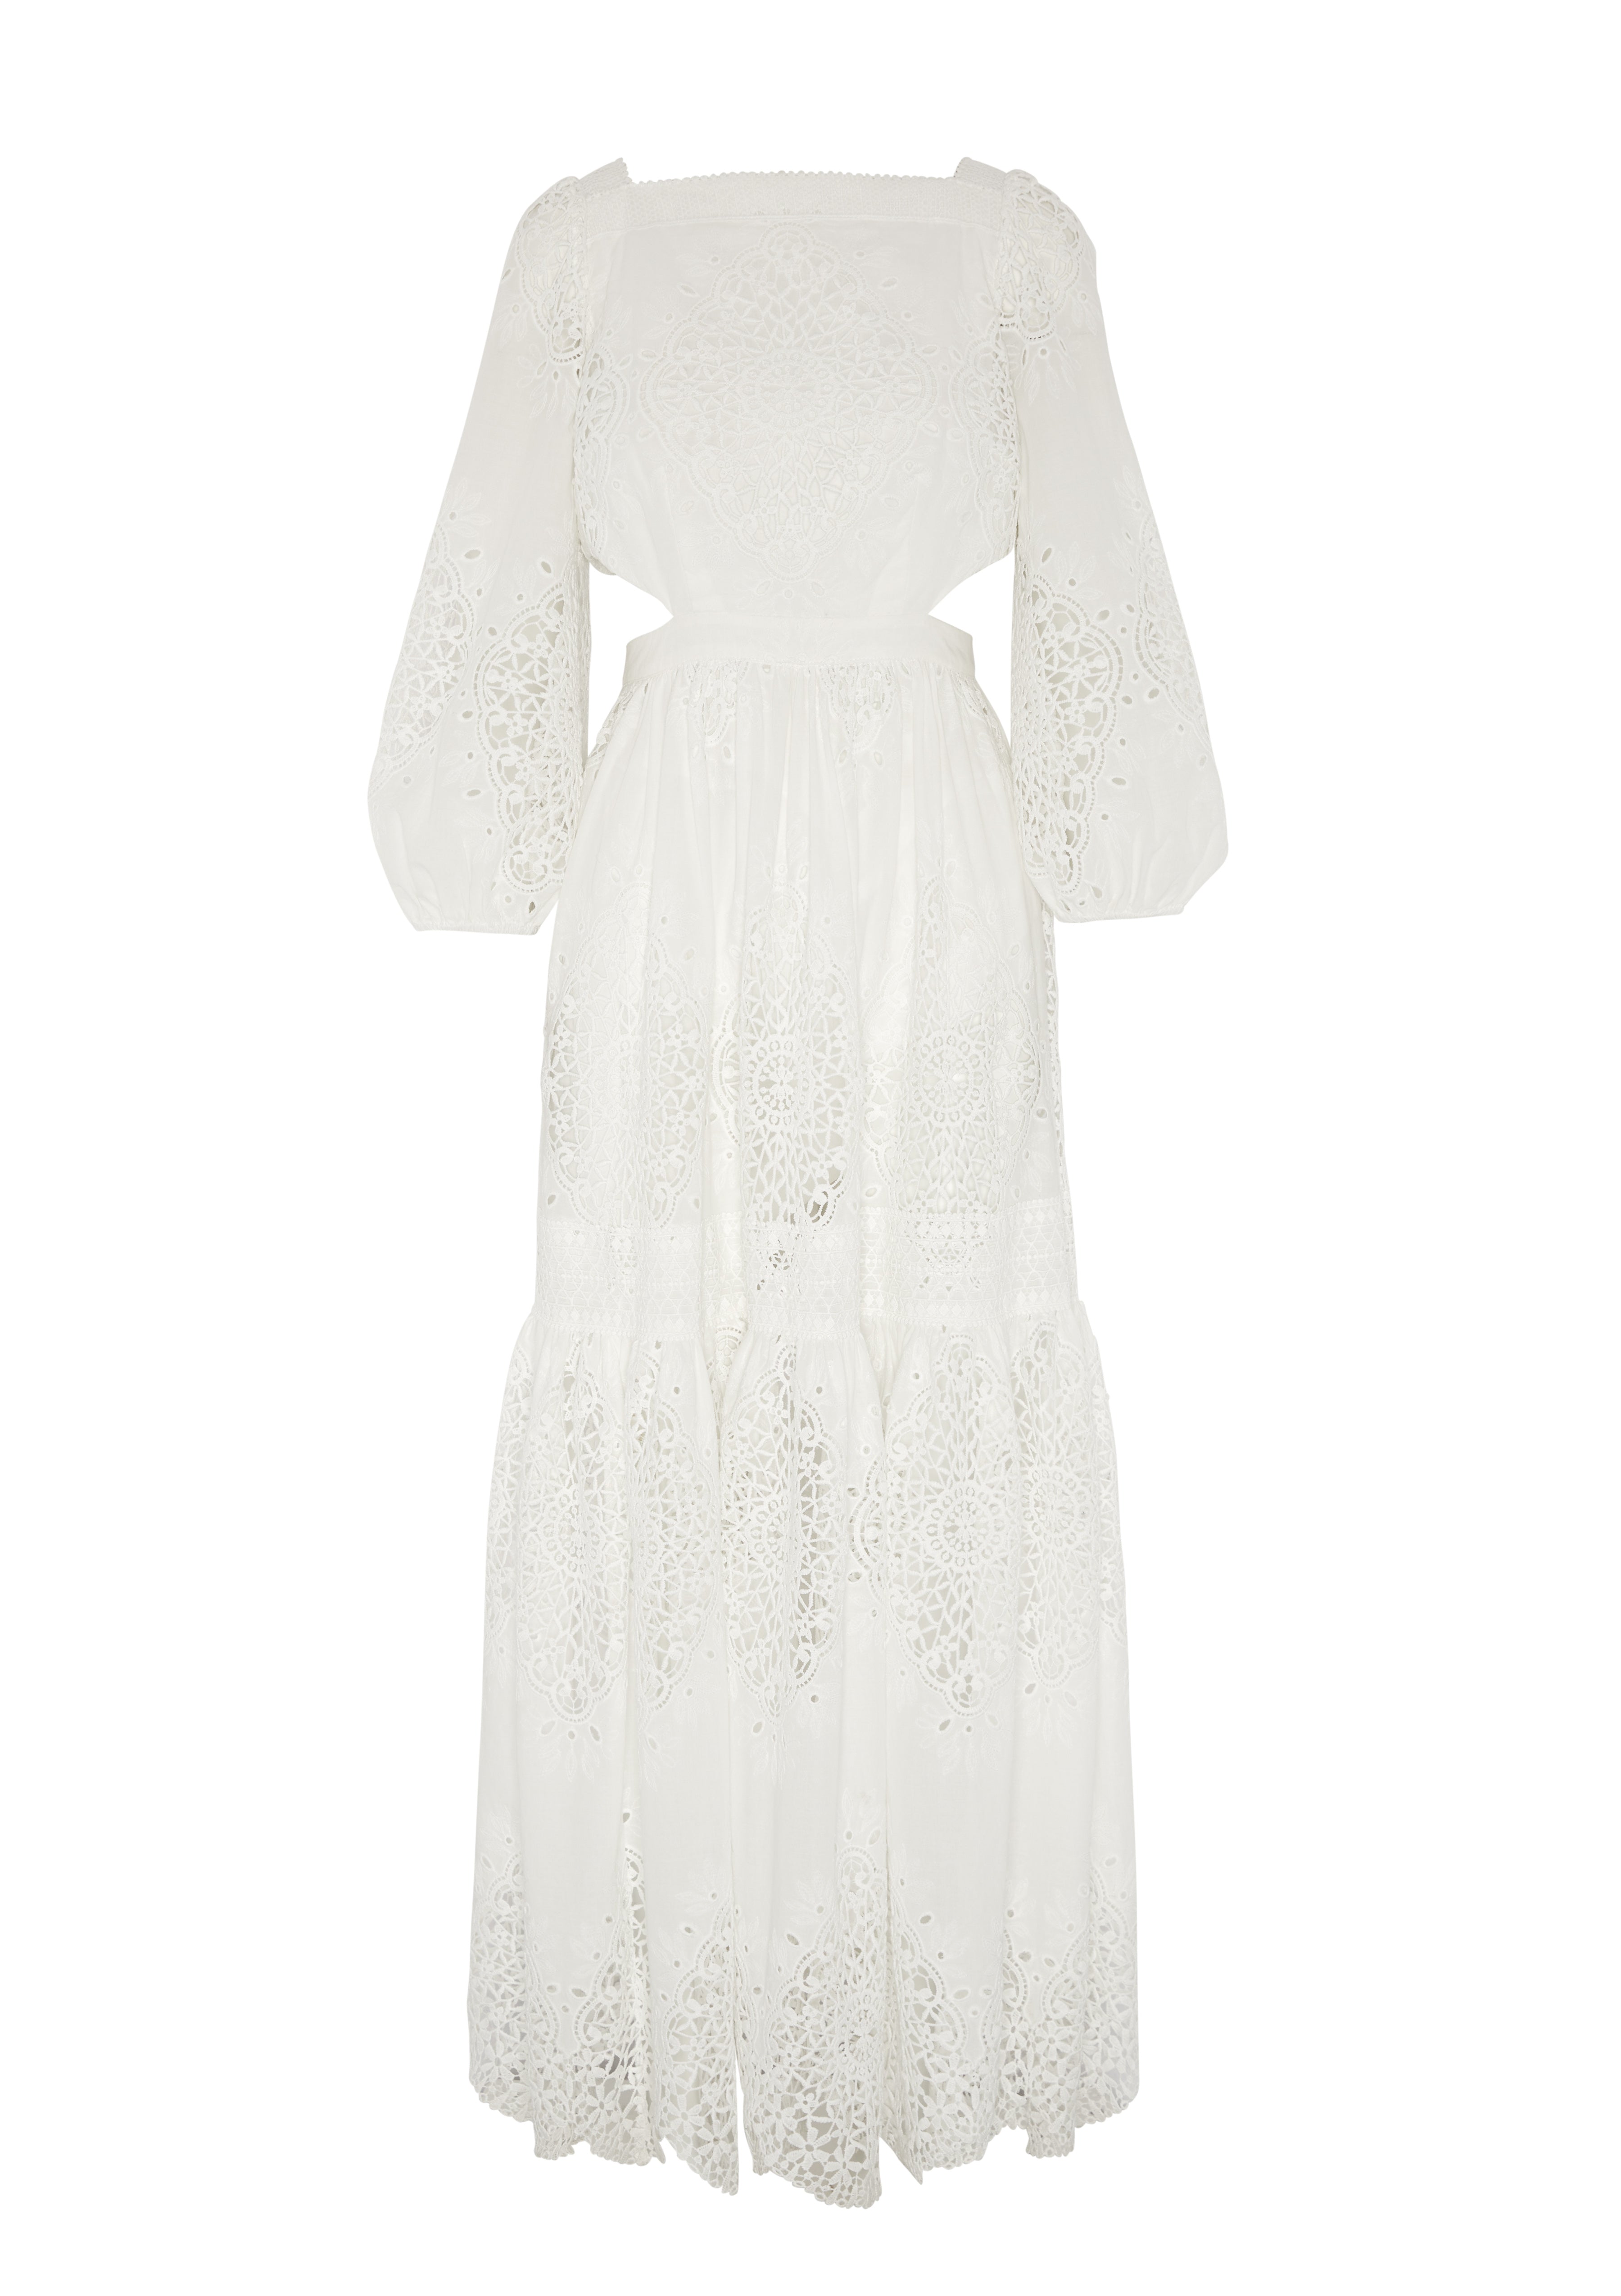 EVARAE CARA DRESS IN COTTON - SUGAR WHITE